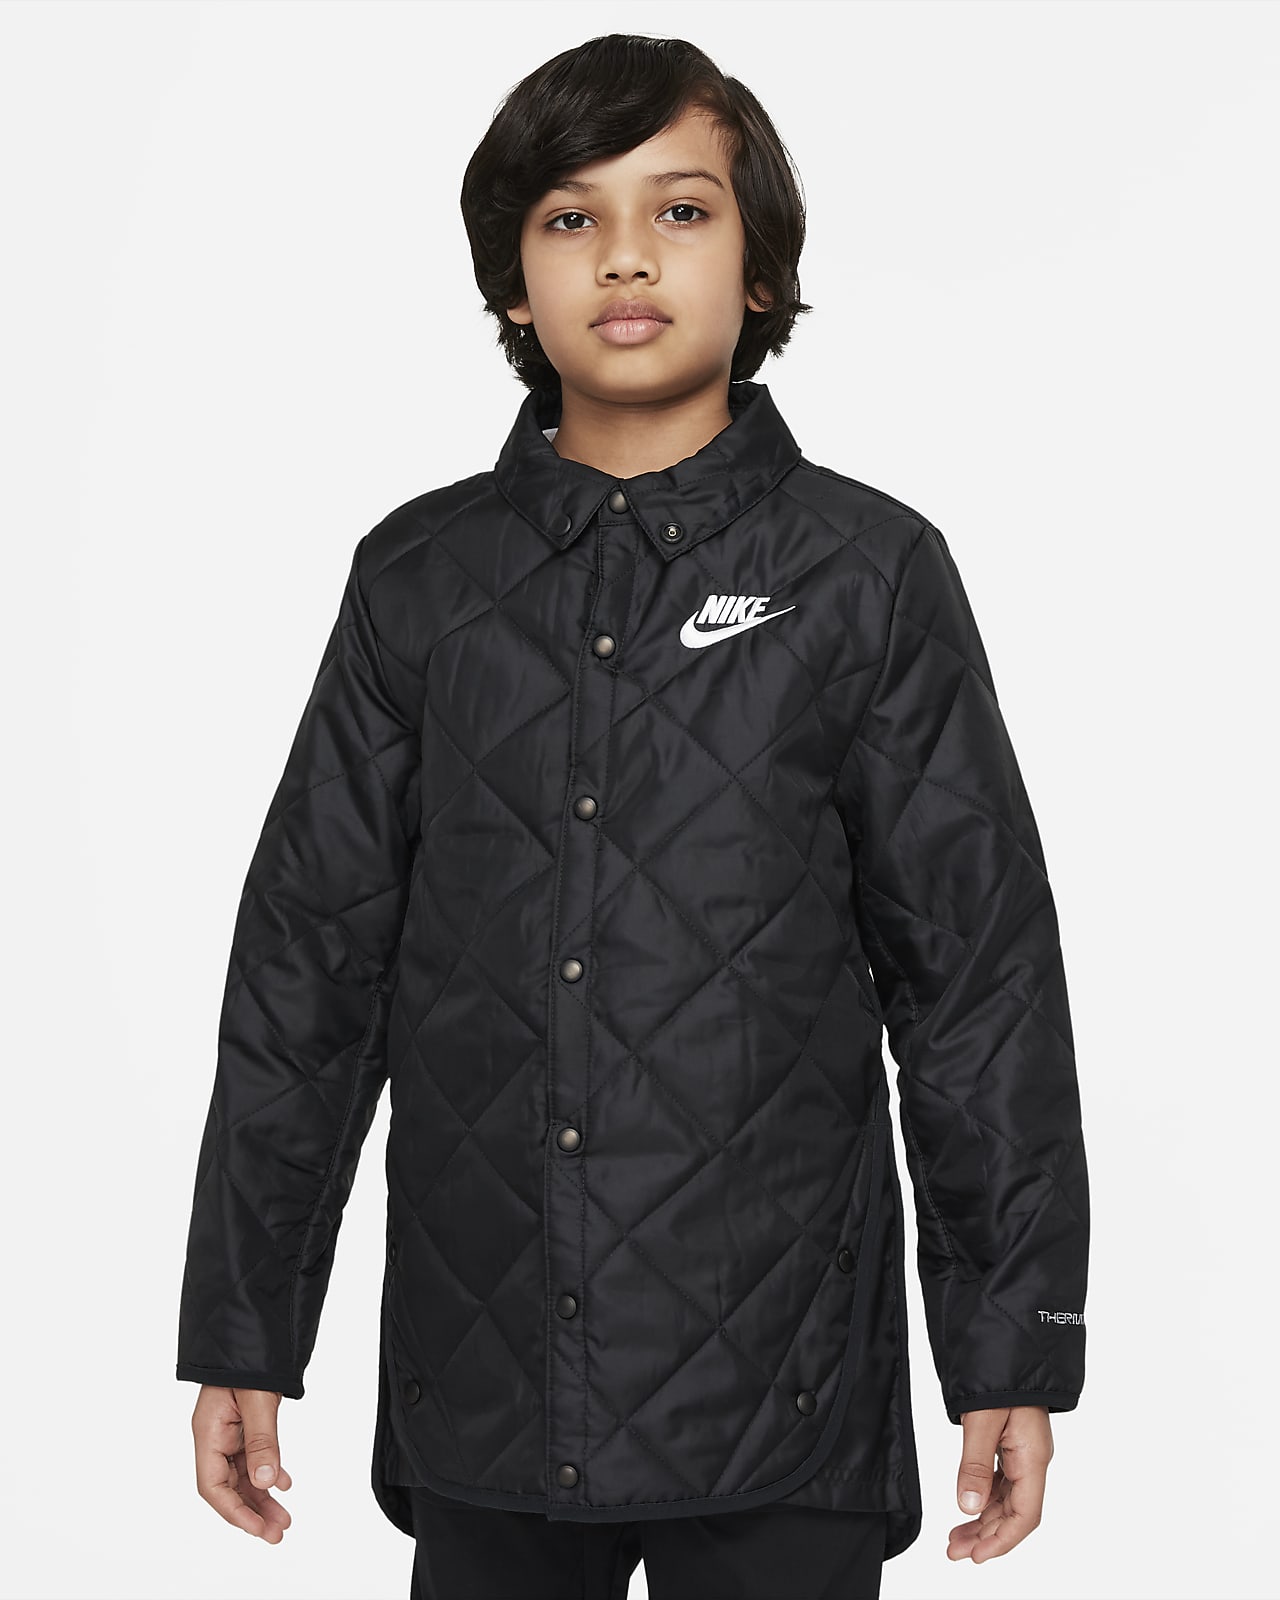 Nike Sportswear Big Kids' Synthetic-Fill Jacket